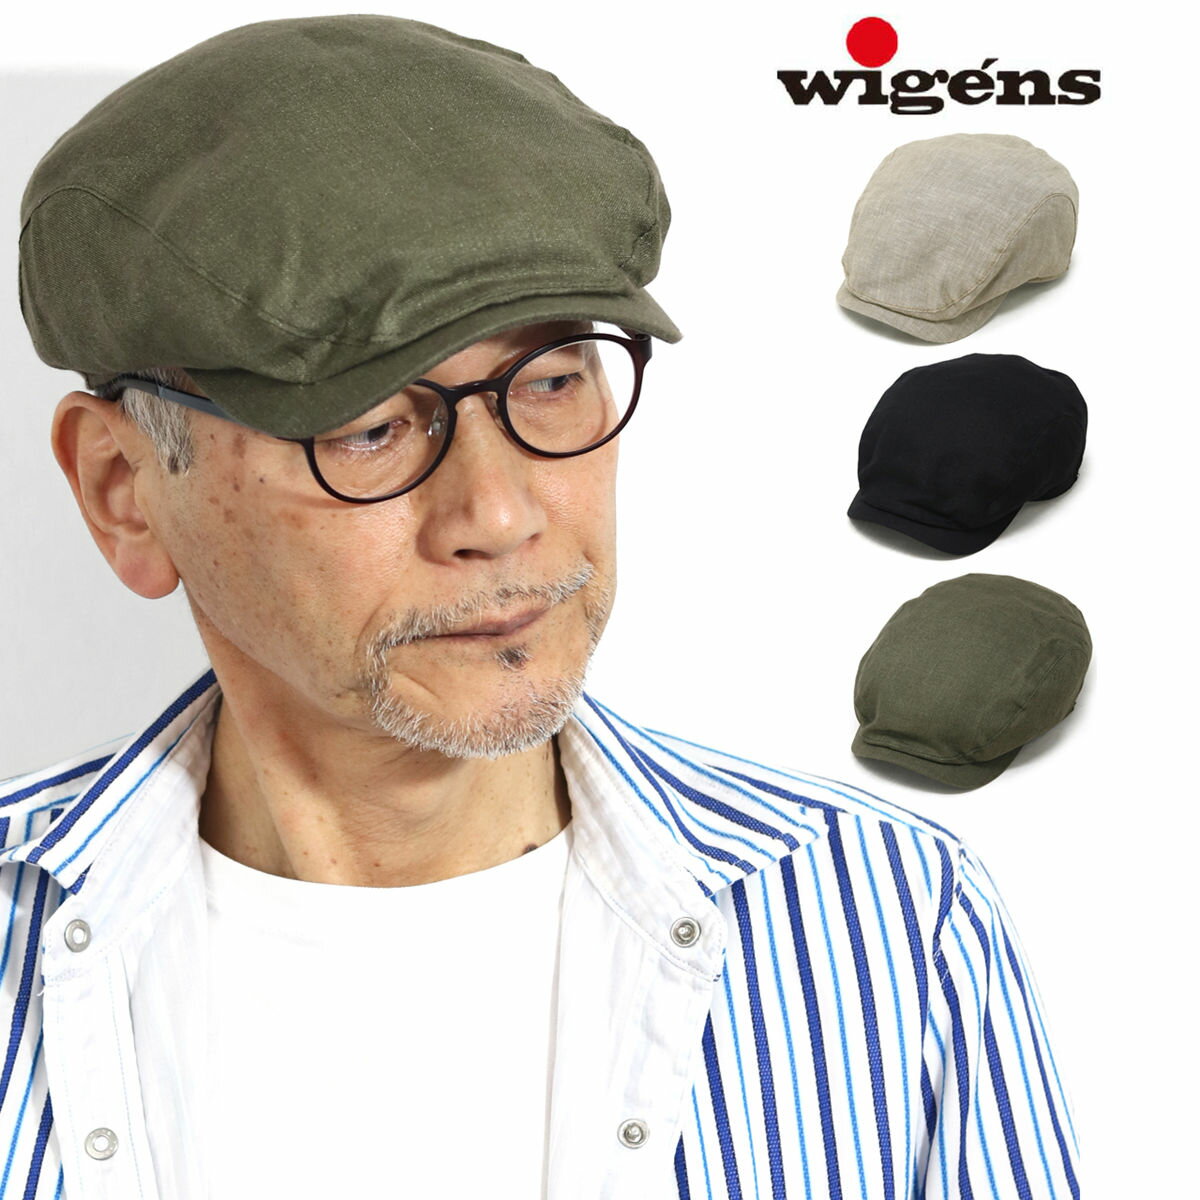 ハンチング帽 AS32 マジックテープ Free メンズ レディース ユニセックス 日本製 帽子 キャップ パン屋 カフェ 制電 難燃 興栄繊商 KOEI ユニフォーム 制服